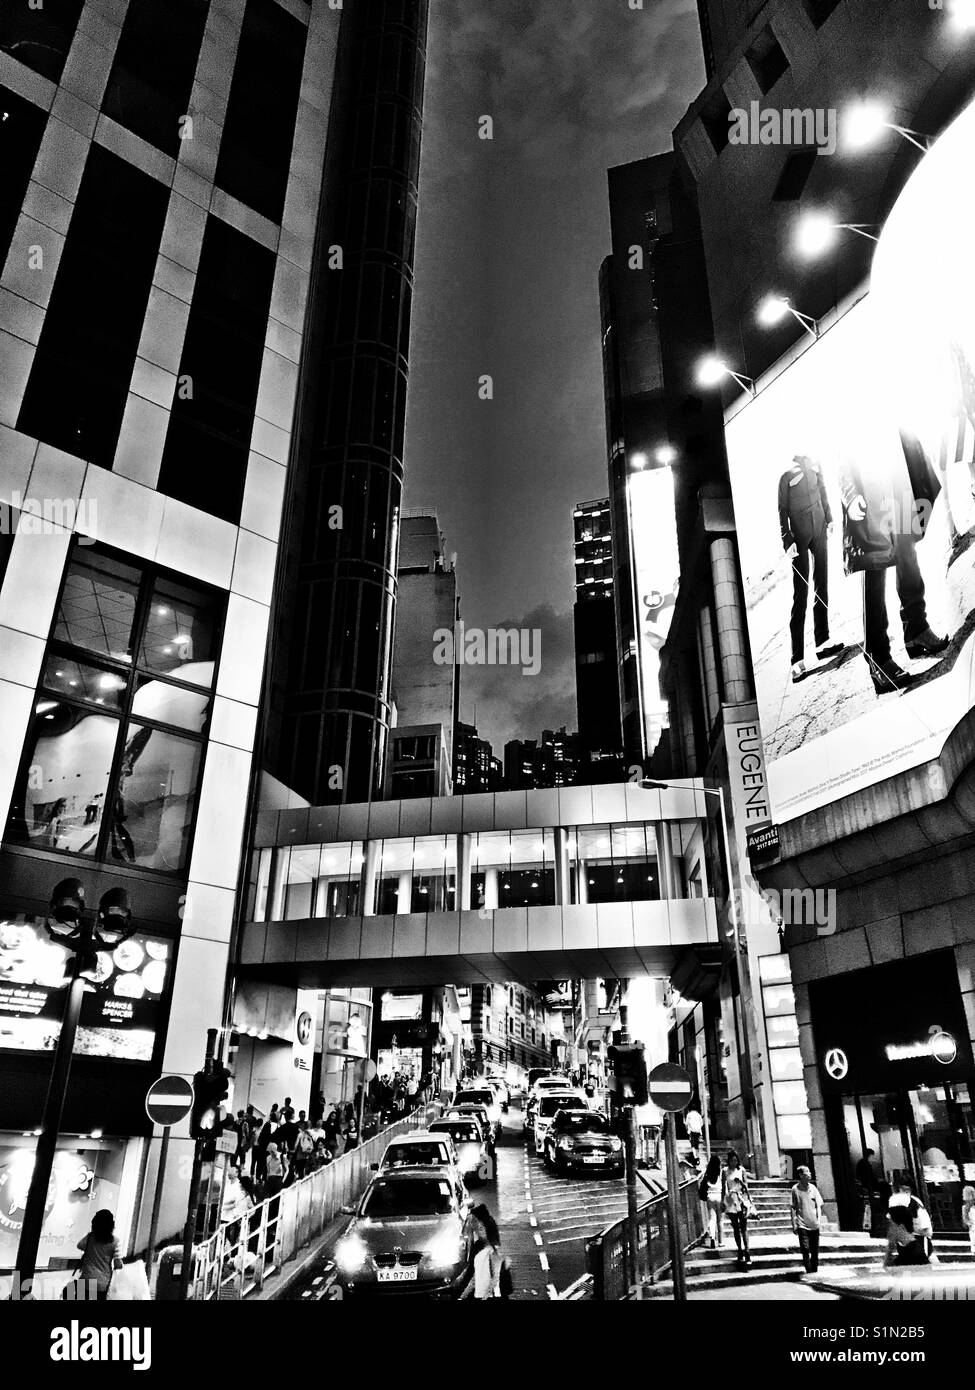 Hong Kong nightlights Stock Photo